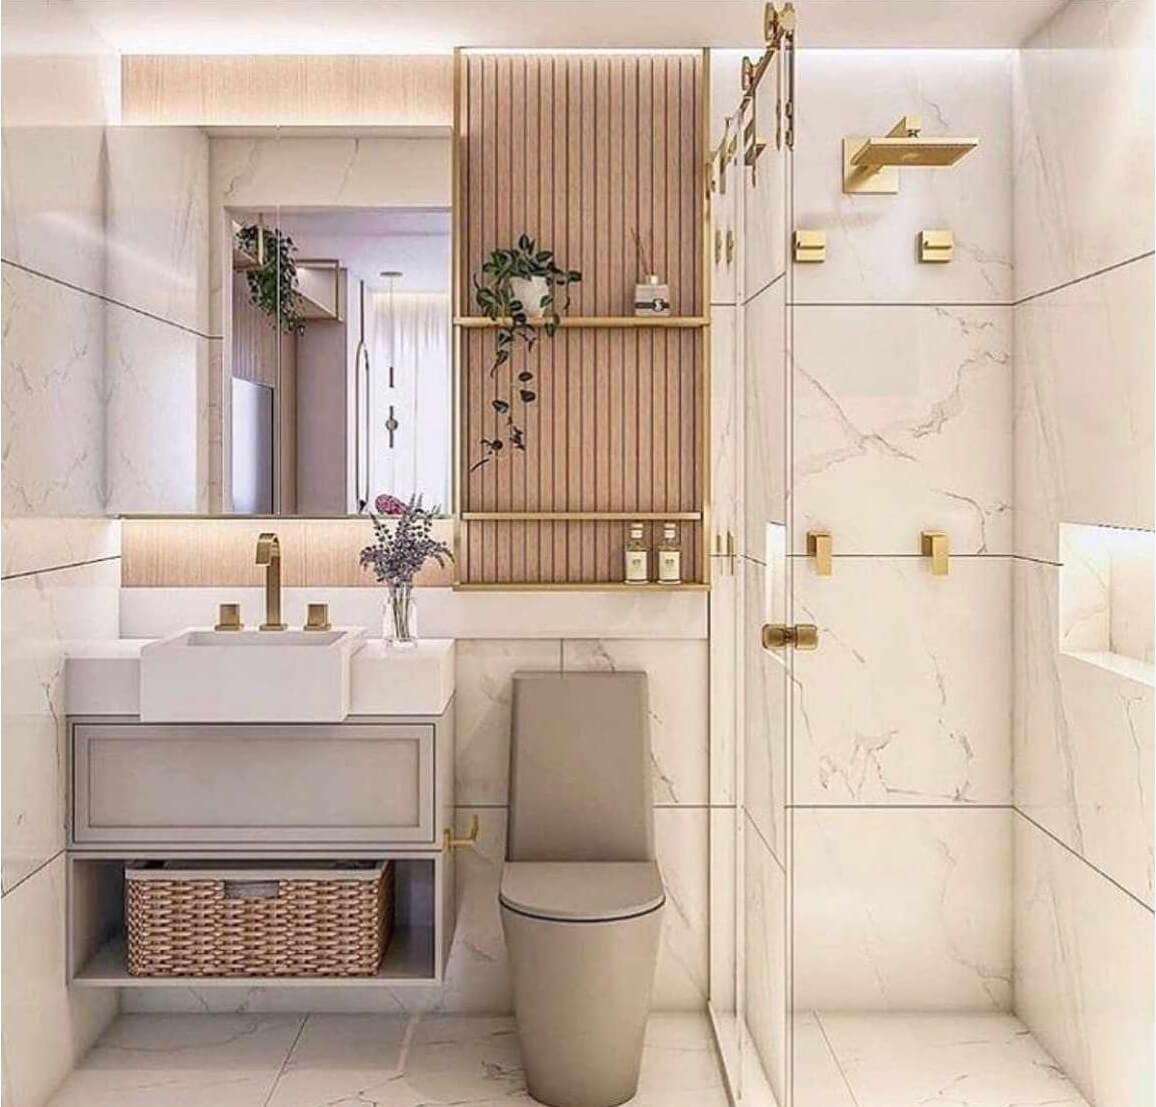 Với nhiều kiểu dáng và phong cách thiết kế đa dạng, phòng tắm luôn có thể khiến bạn để lại ấn tượng đẹp trong lòng người xem. Từ những phong cách vintage, retro đến hiện đại và thanh lịch, phòng tắm sẽ trở thành điểm nhấn vô cùng quan trọng trong ngôi nhà của bạn.